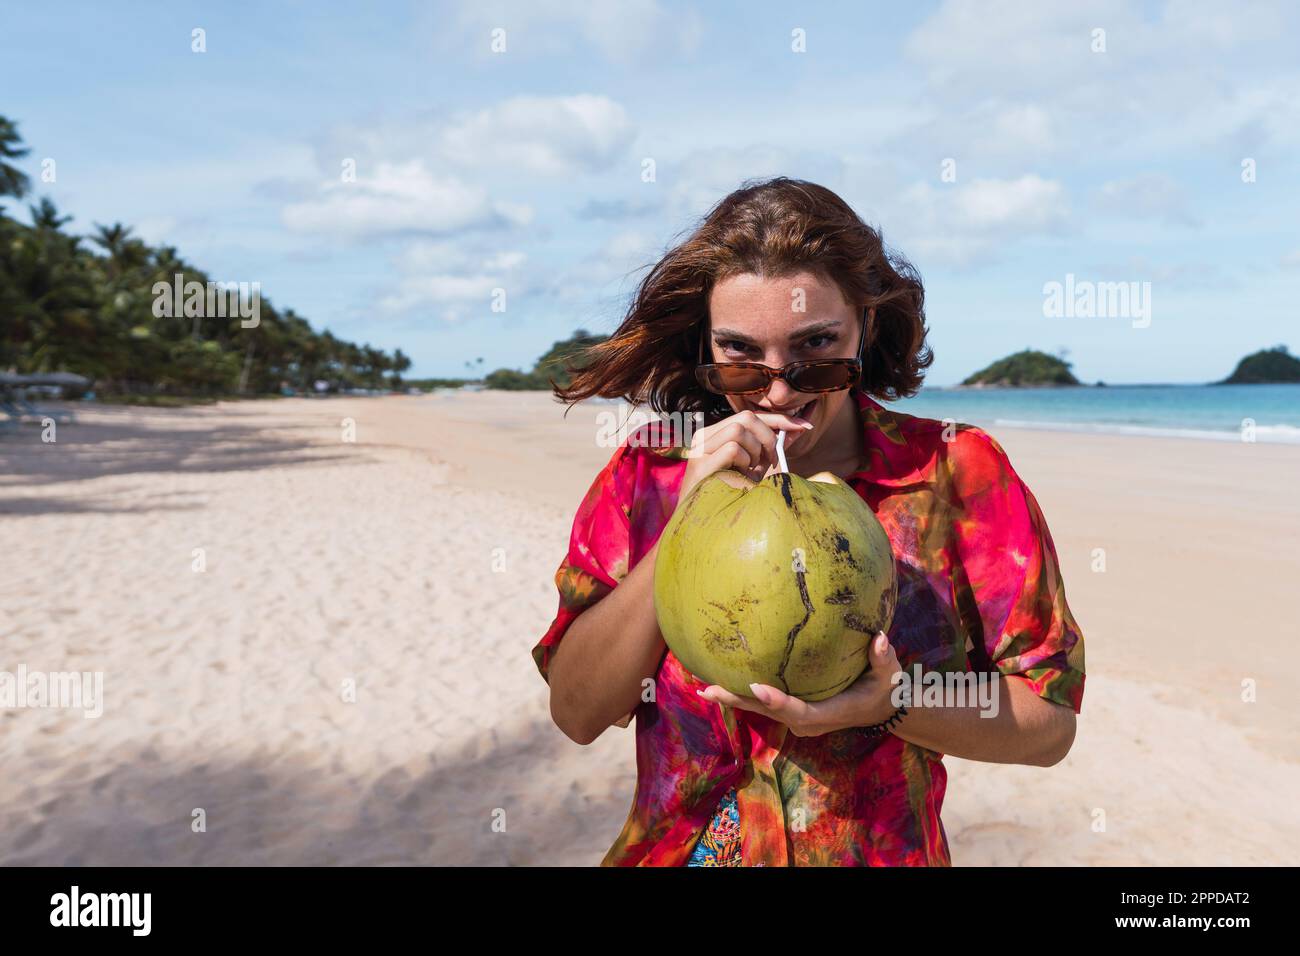 Une jeune femme souriante boit de l'eau de coco à la plage Banque D'Images